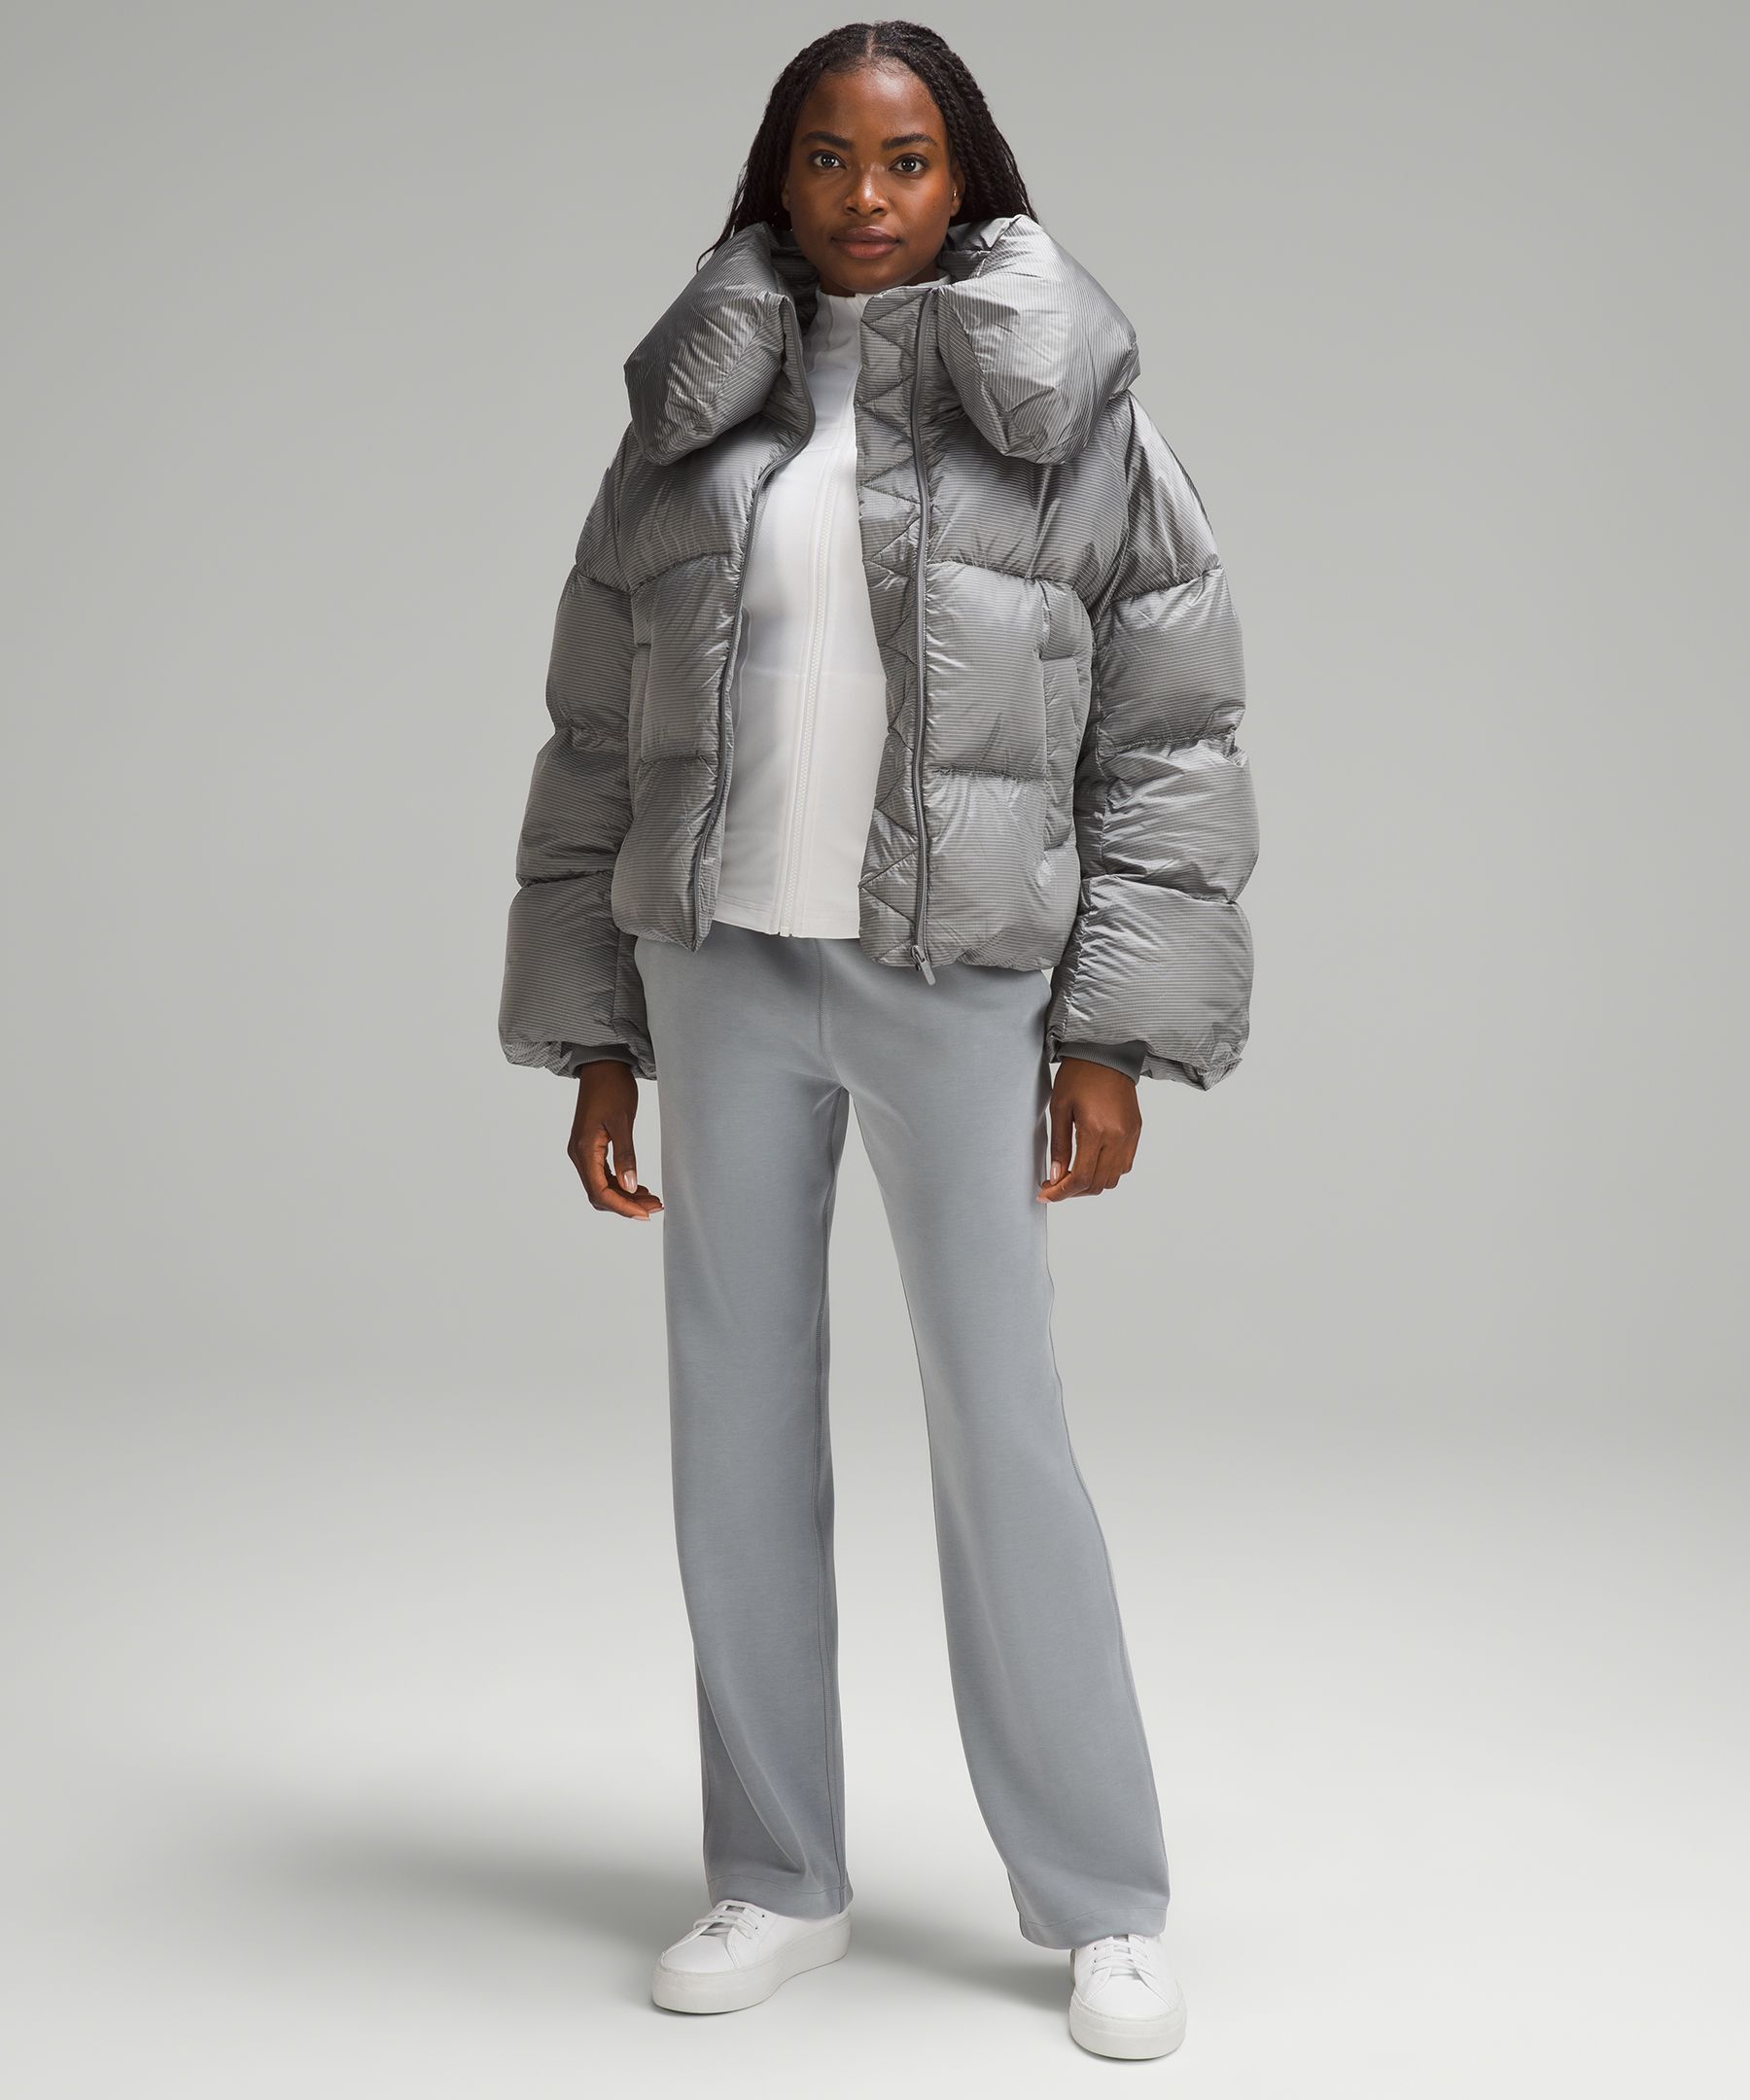 Down jacket (small) // lululemon leggings // winter boots #outerwear  #wintercoats